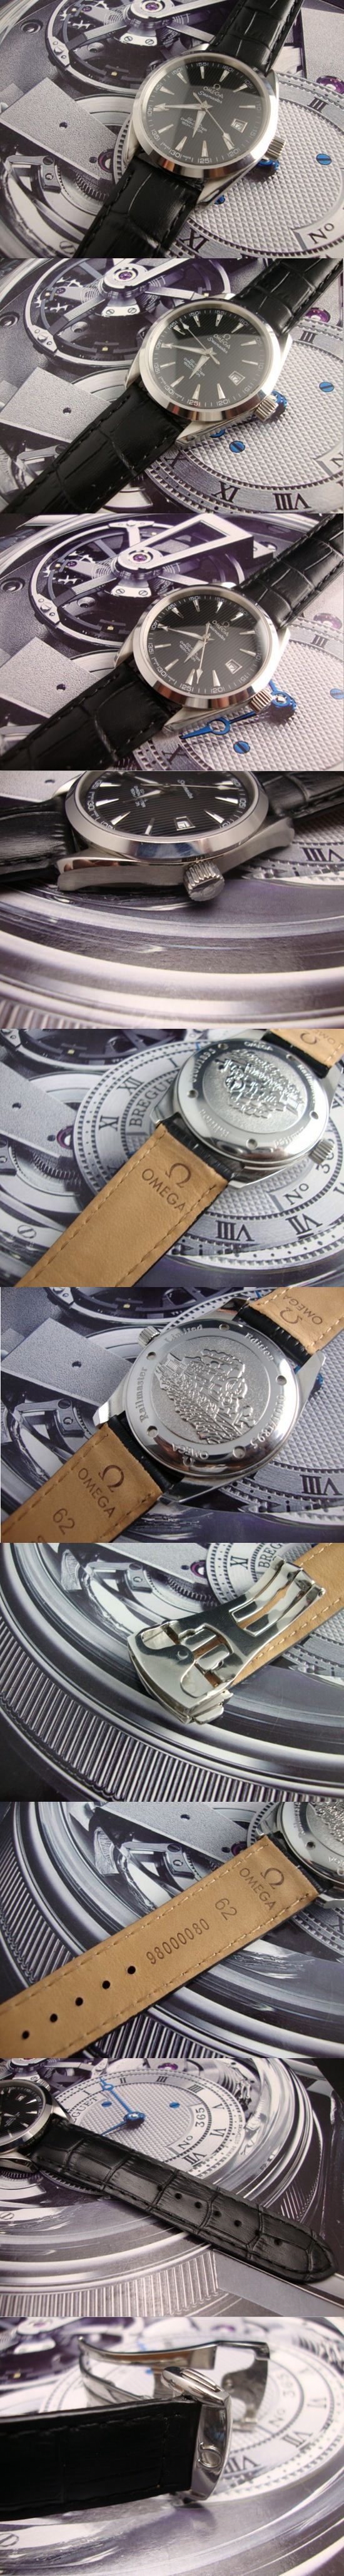 おしゃれなブランド時計がOMEGA-オメガ-腕時計 オメガ 男/女性用腕時計 OMEGA-N-006Aを提供します.